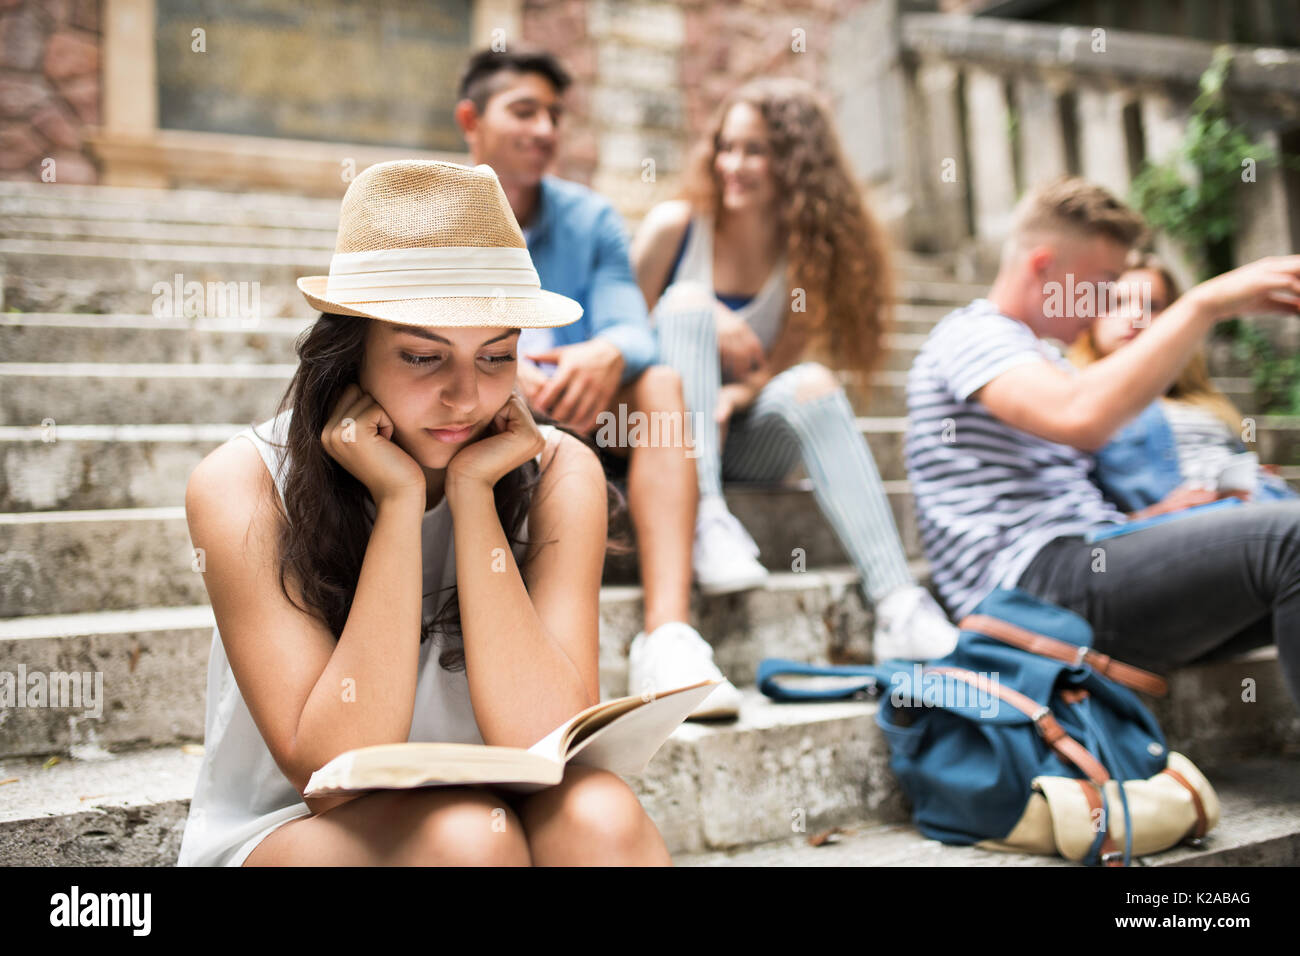 Teenage student girl sitting on marches de pierre de la lecture d'un livre. Banque D'Images